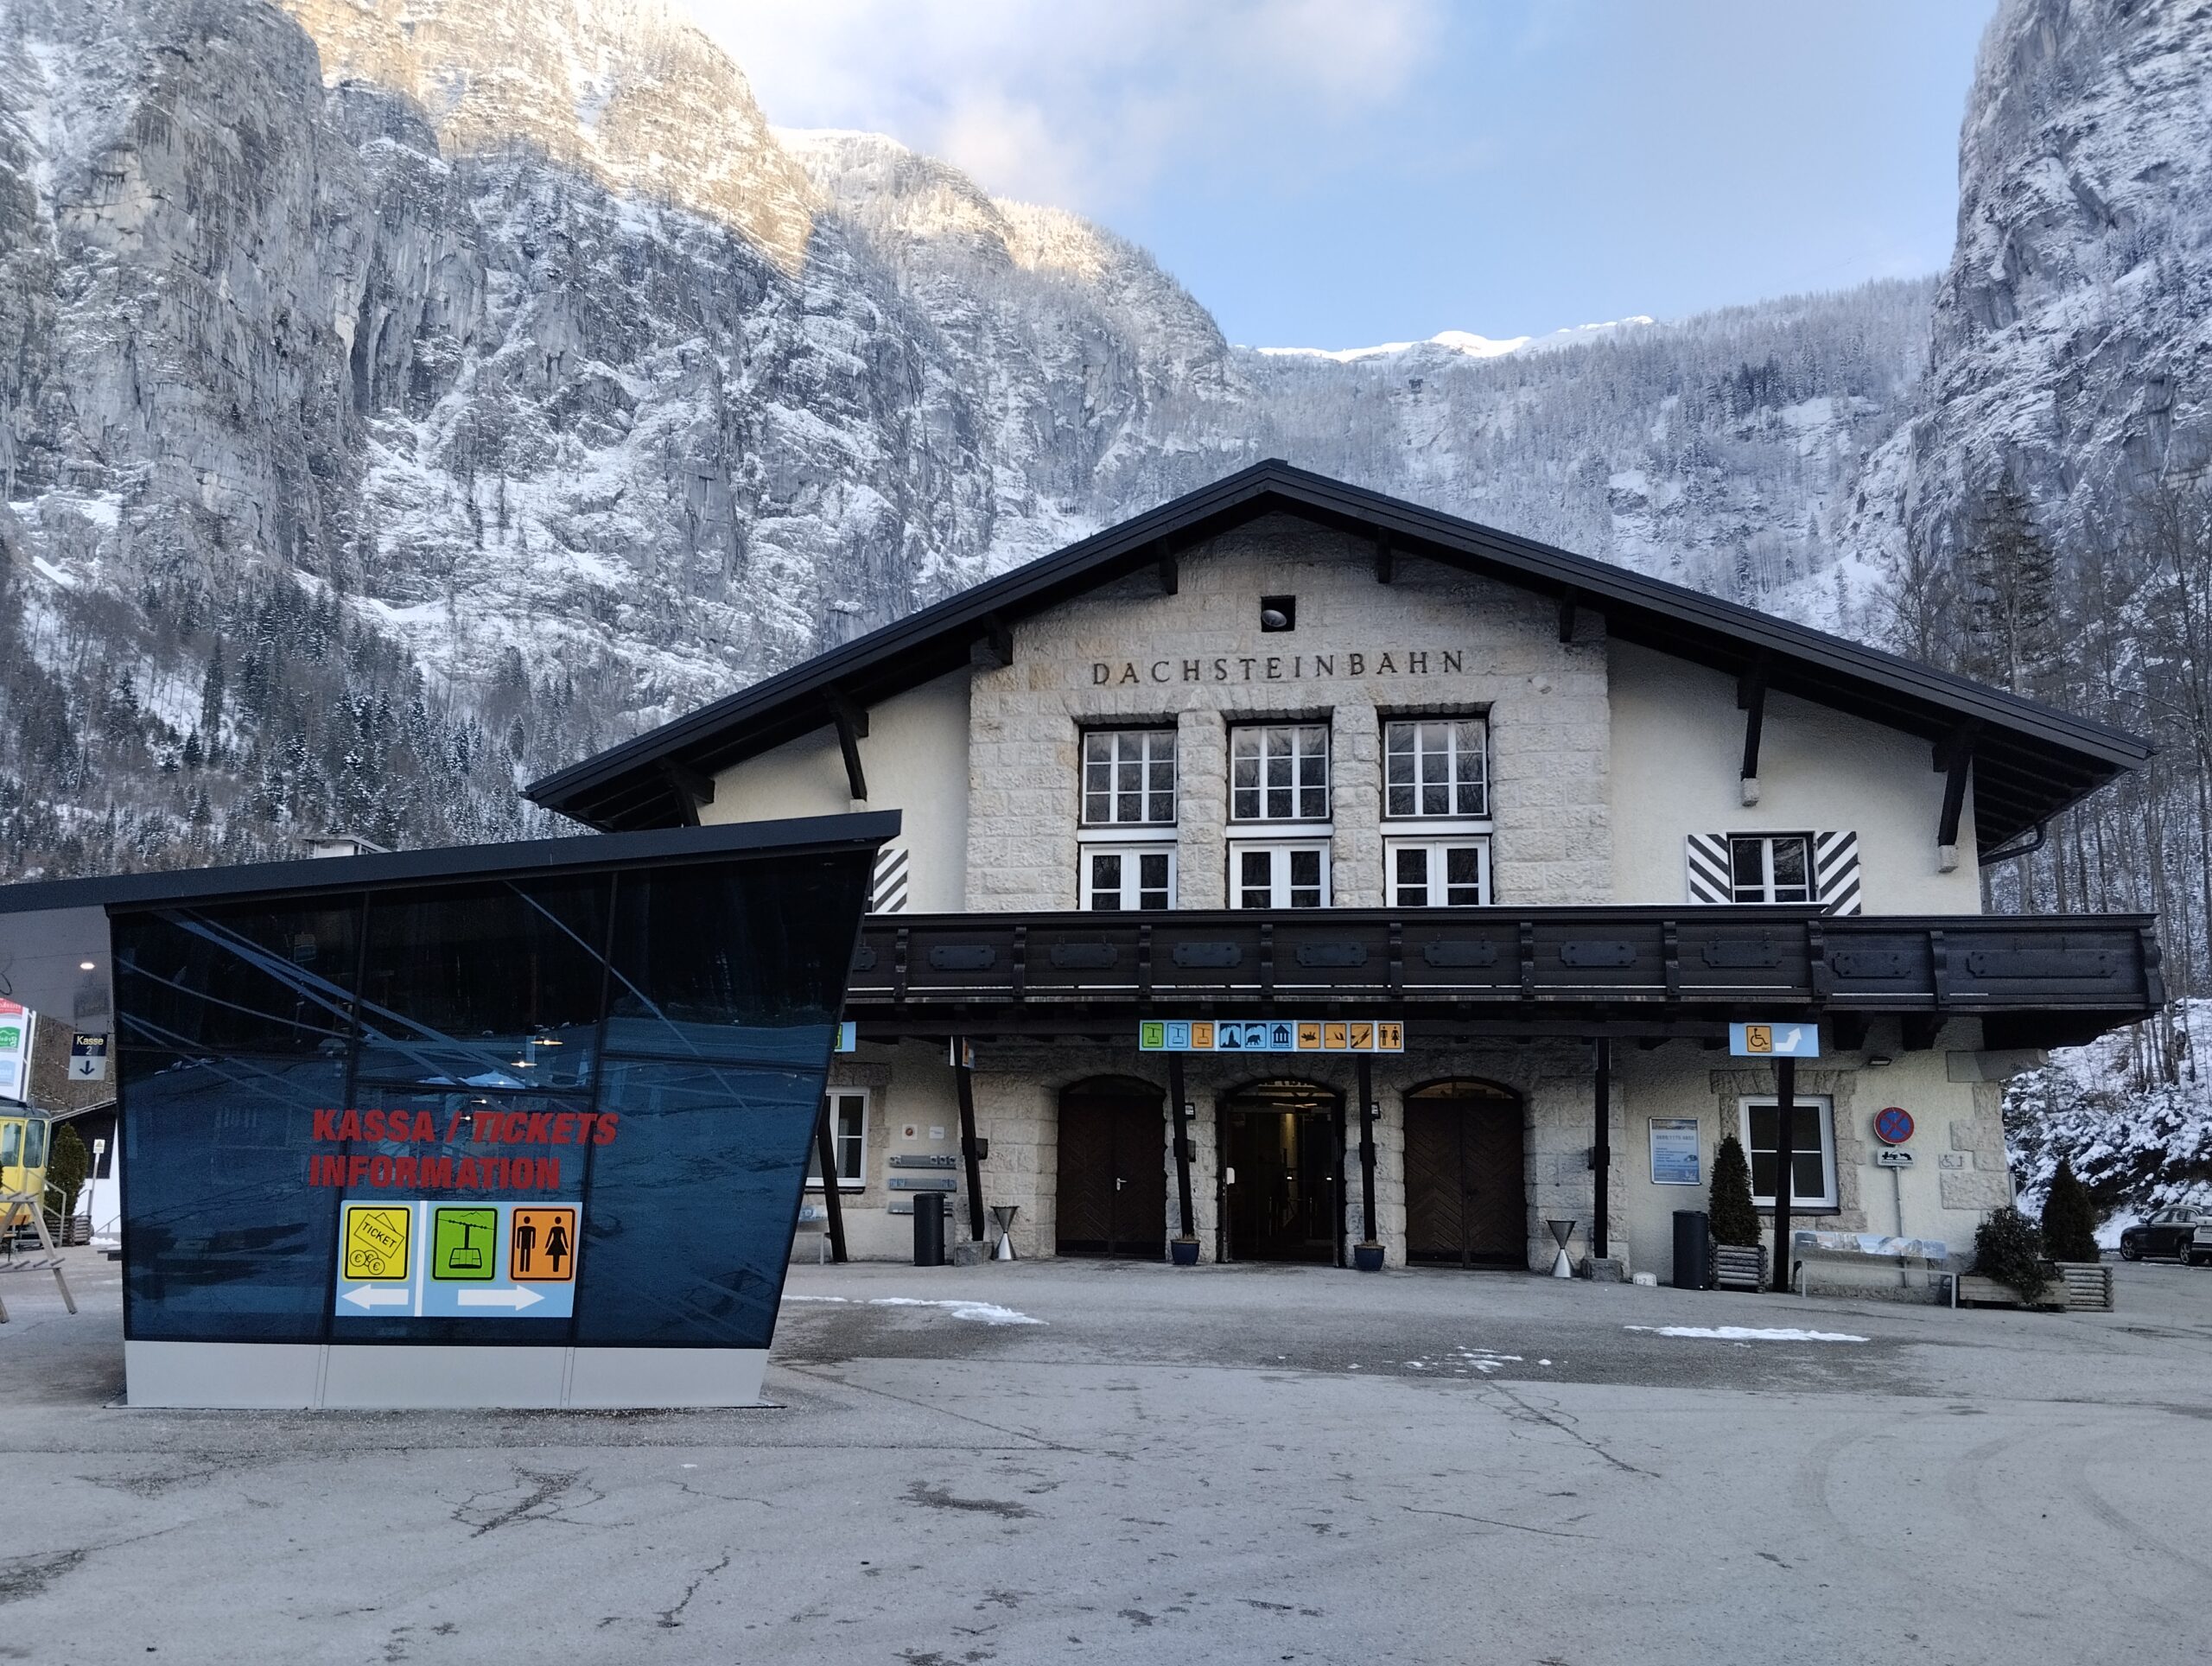 Dachstein Ice Cave World in Obertraun